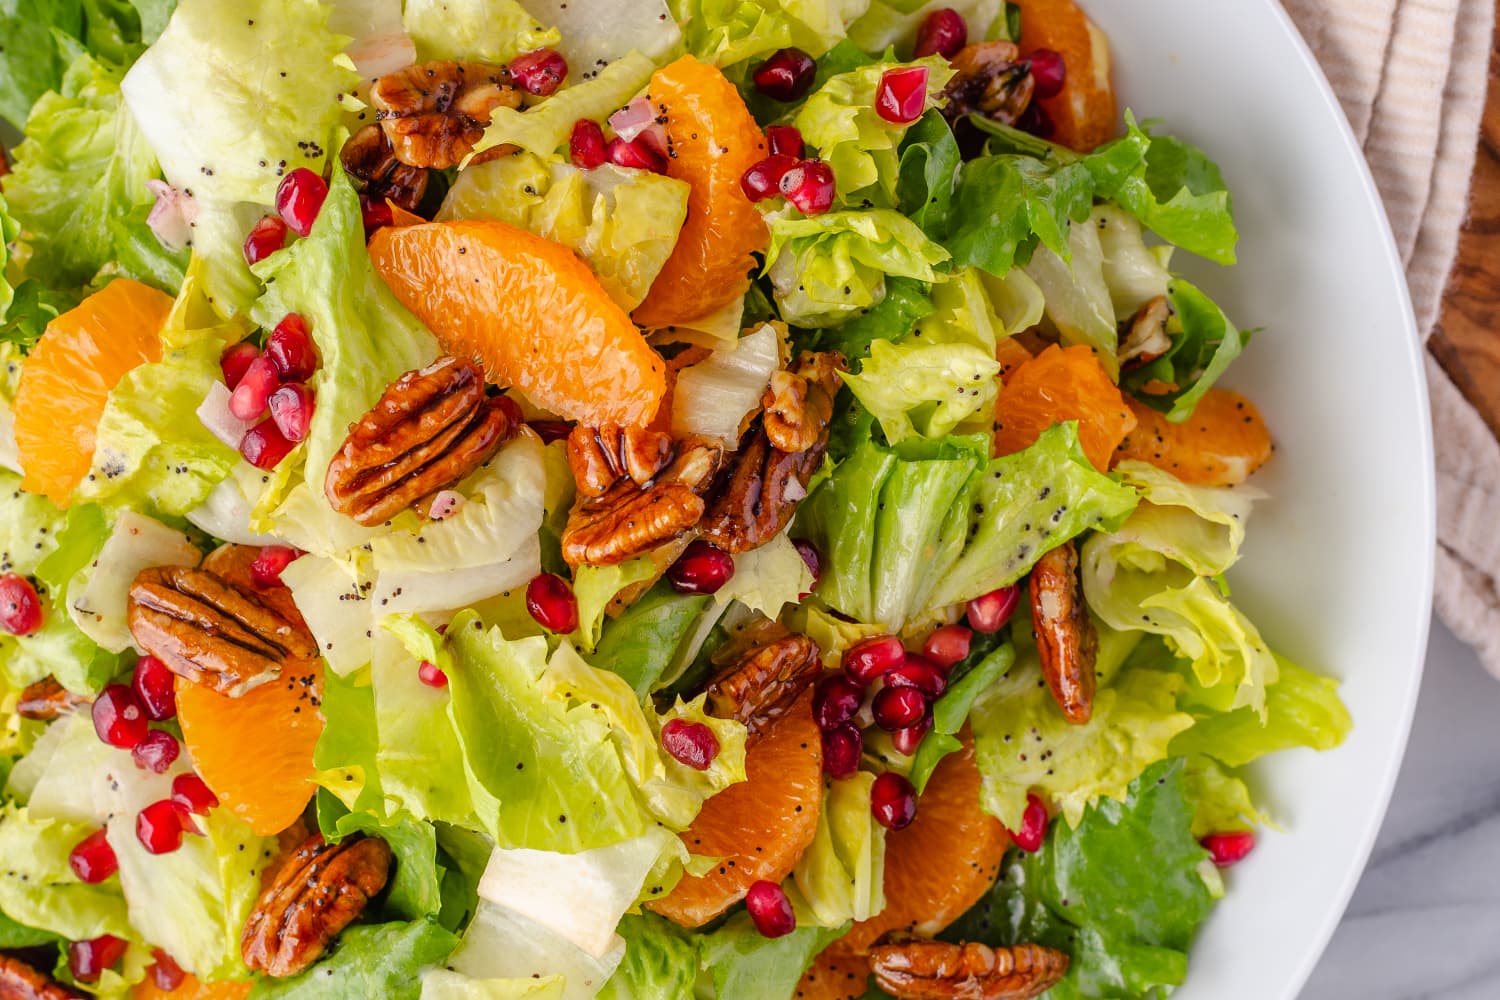 Salad cam quýt là một món ăn siêu tươi và lễ hội